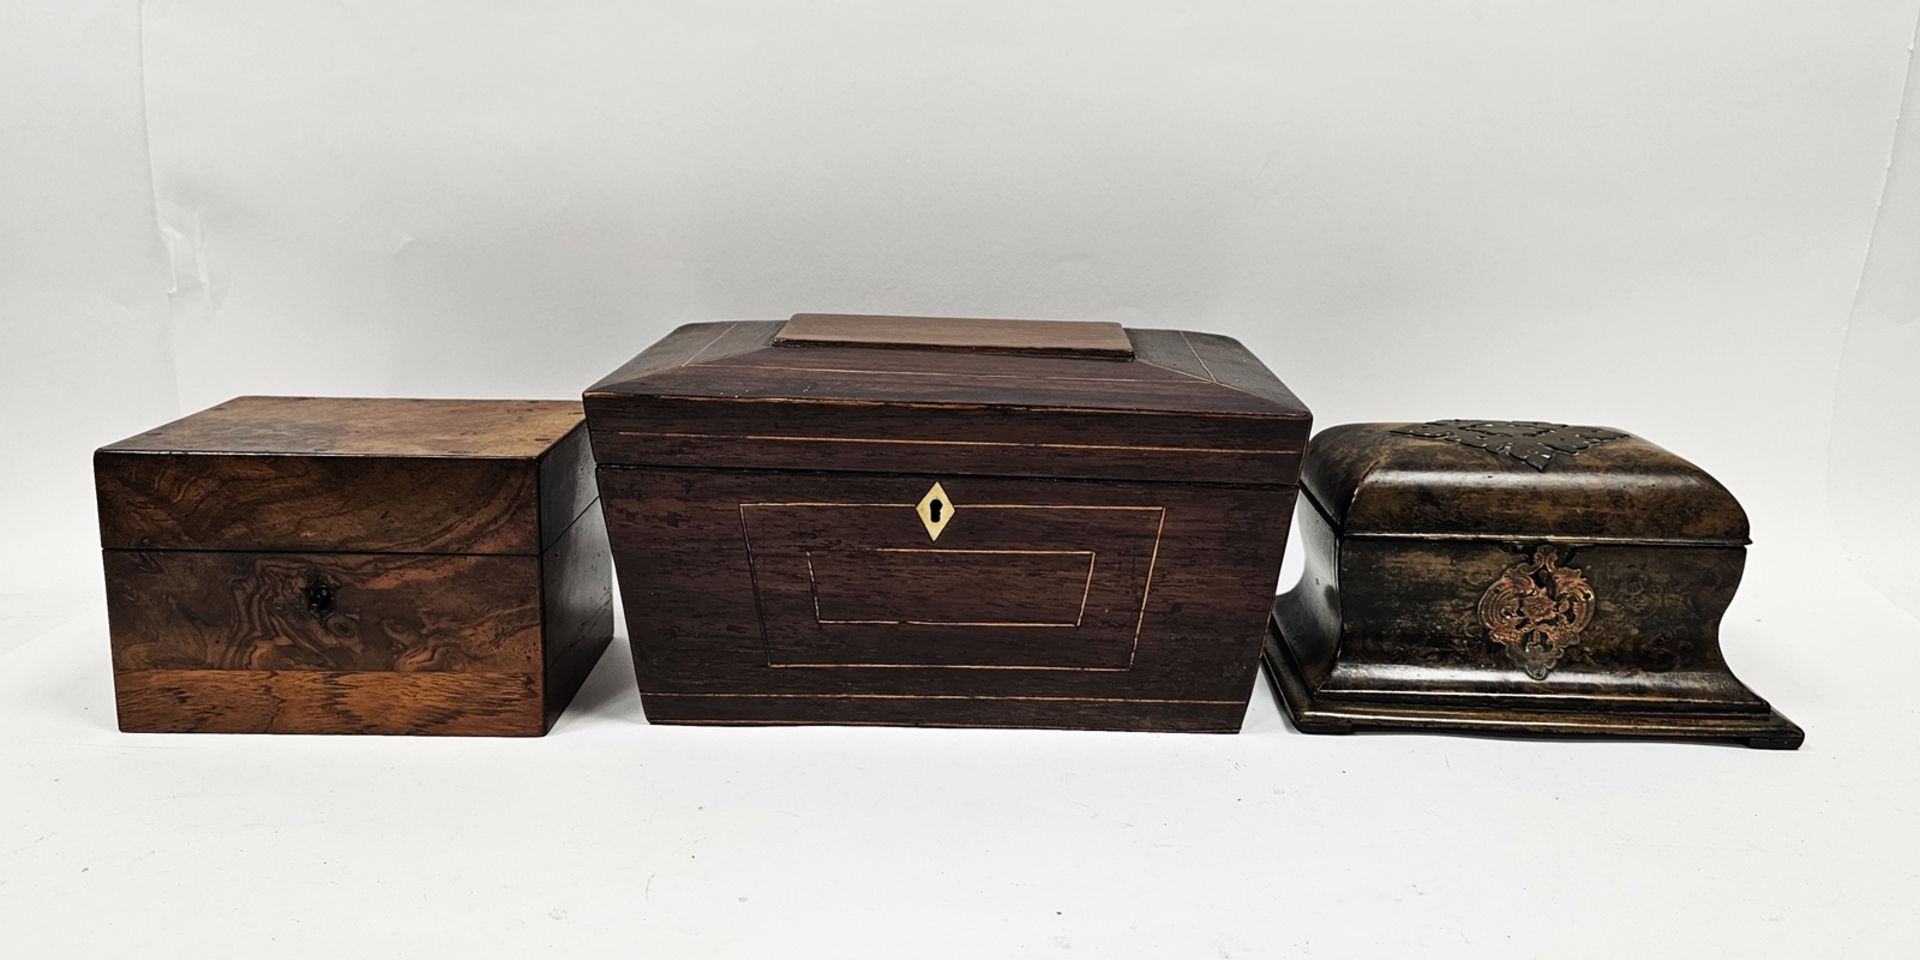 Mahogany and boxwood banded sarcophagus-shaped tea caddy, 28cm x 19cm x 16cm, a waisted burr